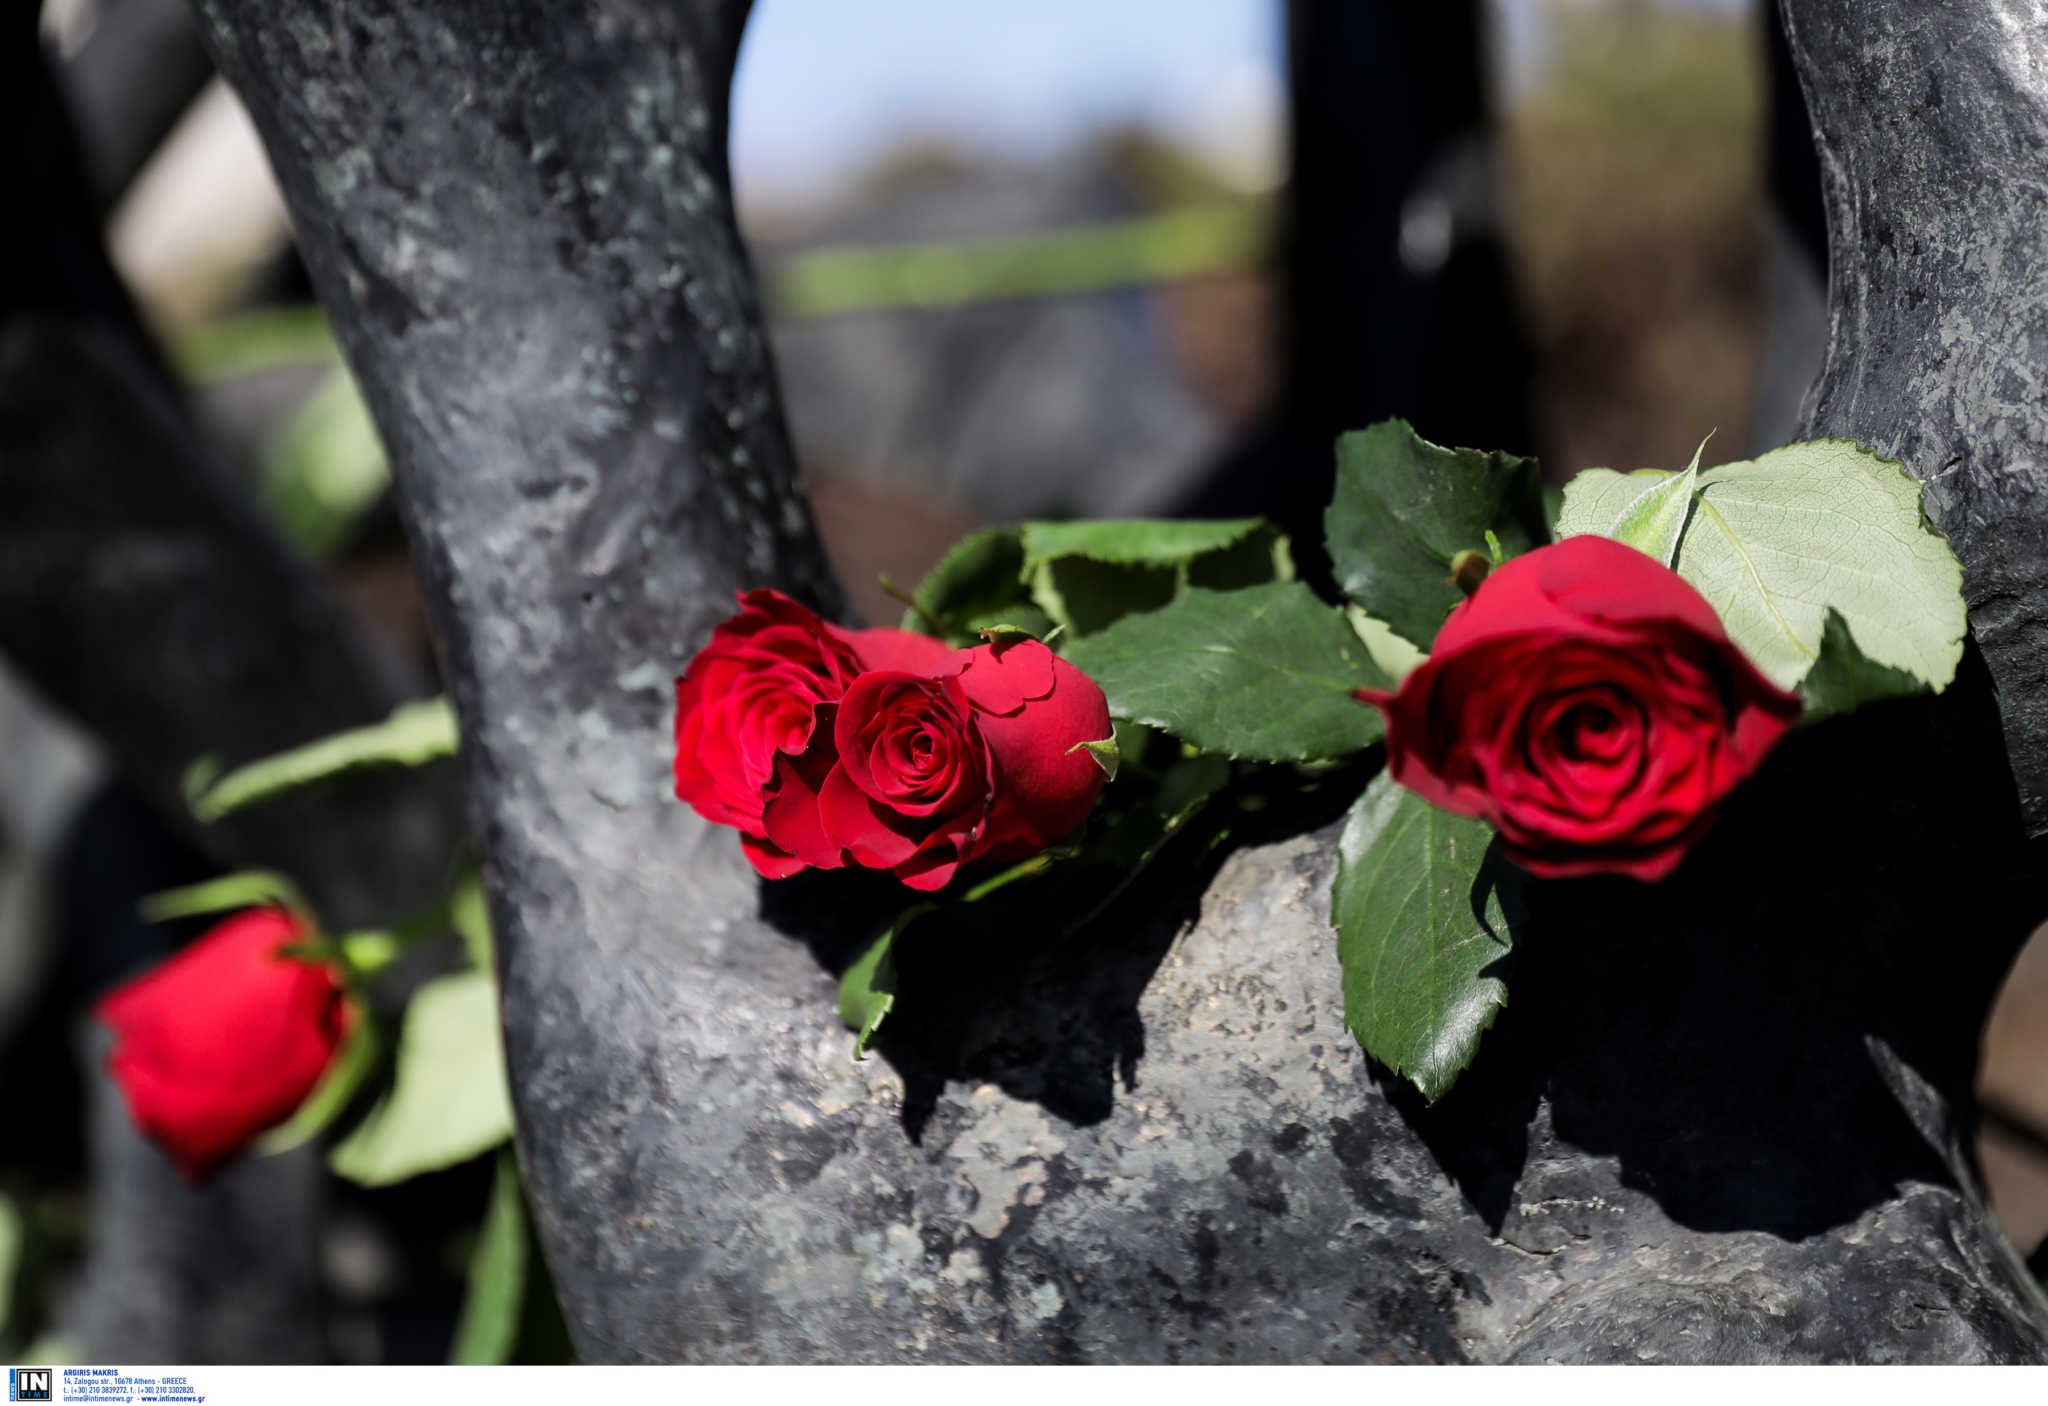 Πέθανε η Θεσσαλονικιά επιζήσασα του Ολοκαυτώματος Ροζίνα Ασσέρ Πάρδο